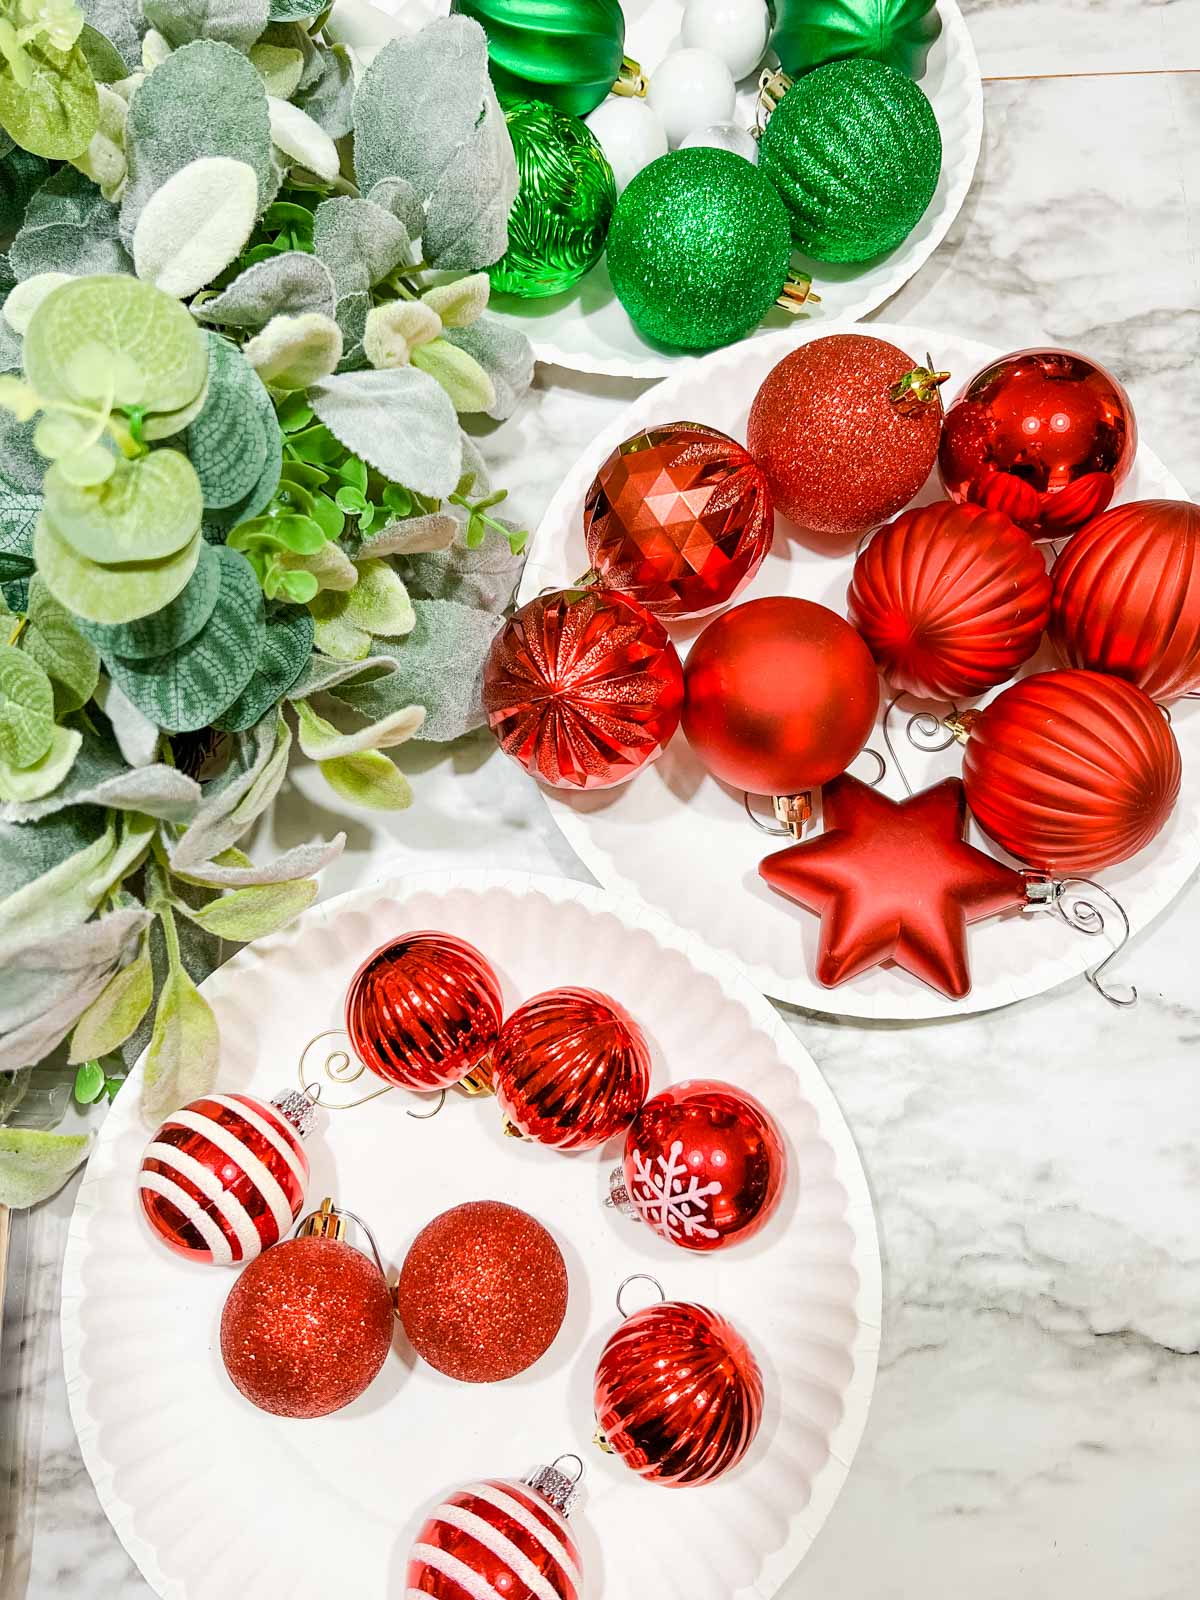 Uma variedade de decorações de Natal em pratos ao lado de uma guirlanda em tons de vermelho e verde e tamanhos diferentes.